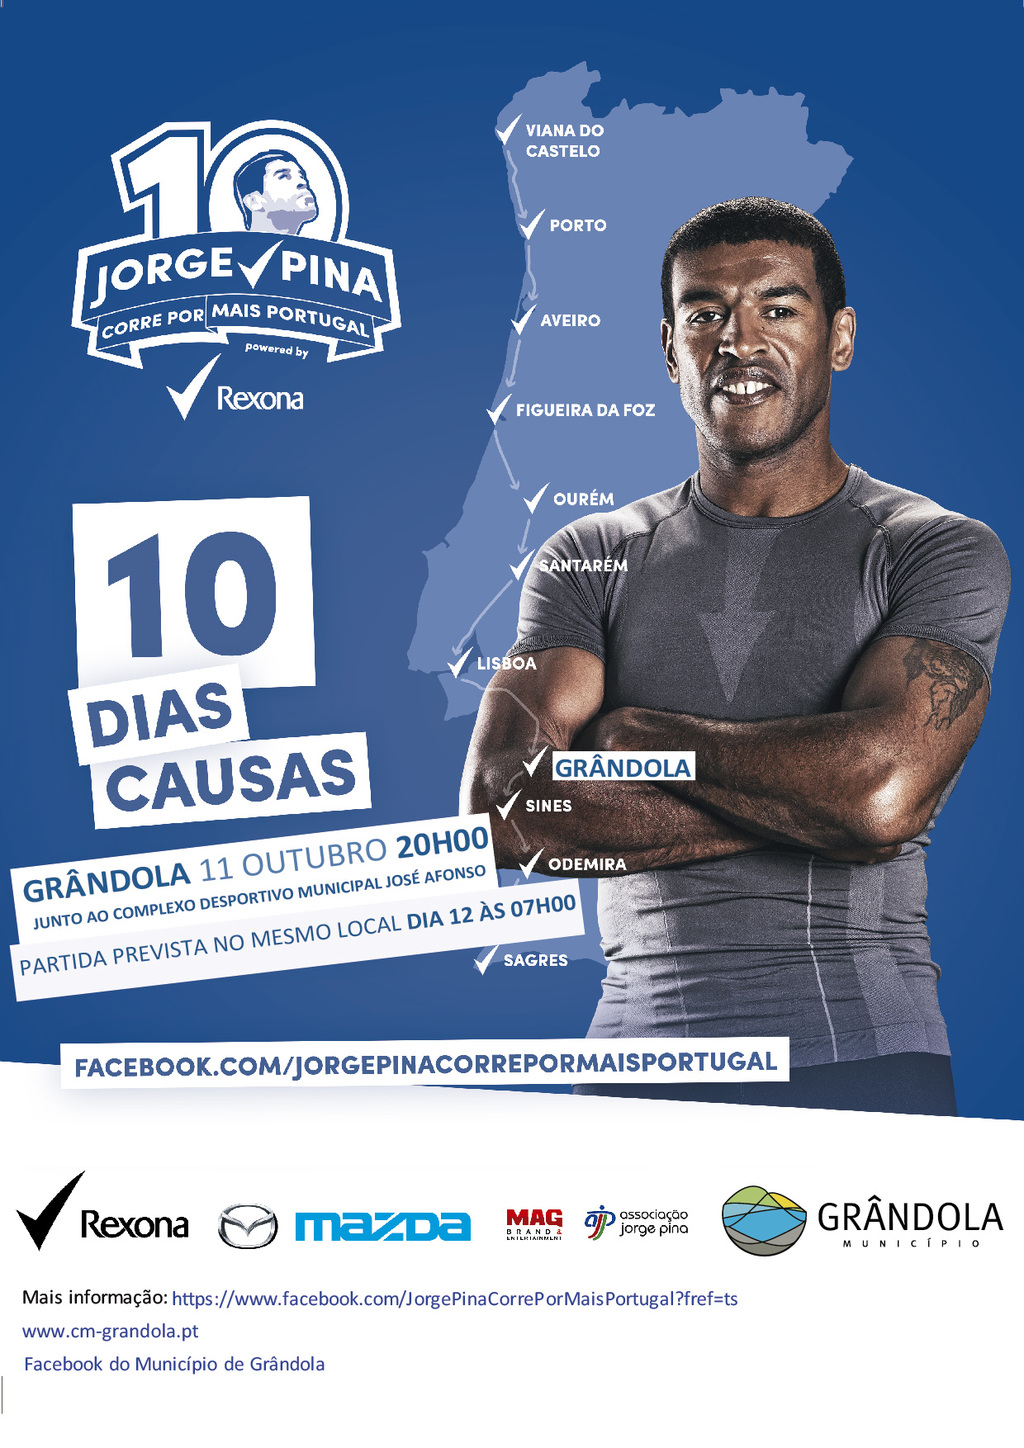 Jorge Pina "Corre por Mais Portugal" - Grândola Recebe o Atleta no Próximo Sábado